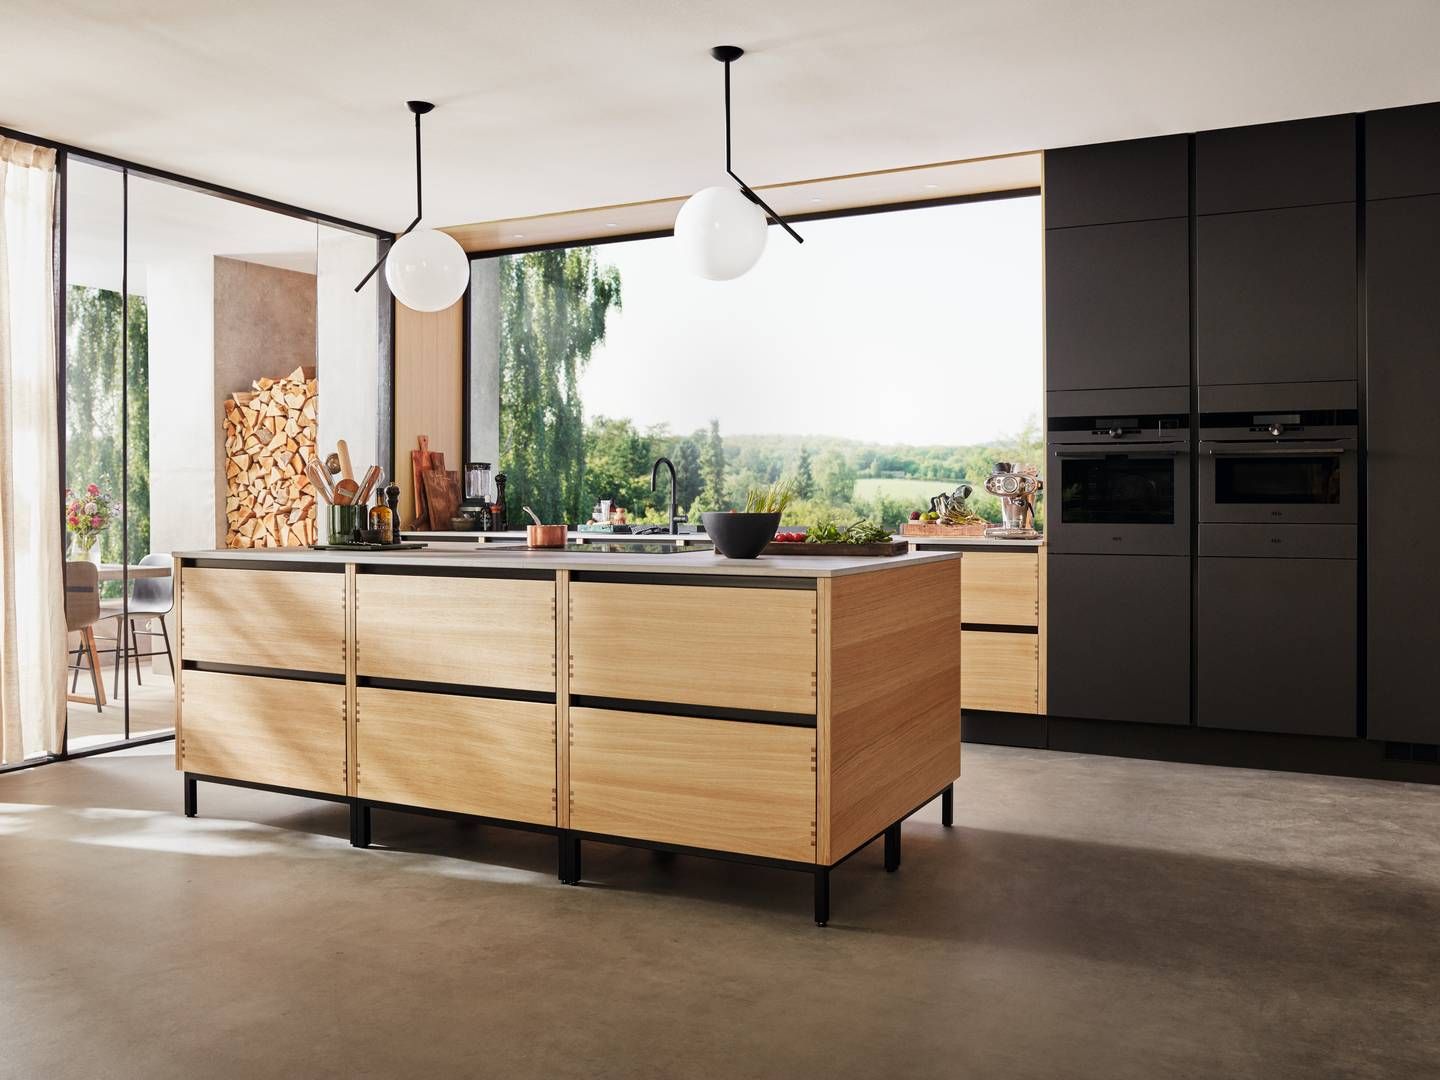 Ud over at eje HTH Køkkener står Nobia også bag Invita og Uno Form, som er koncernens premium-brand. | Foto: Hth/pr